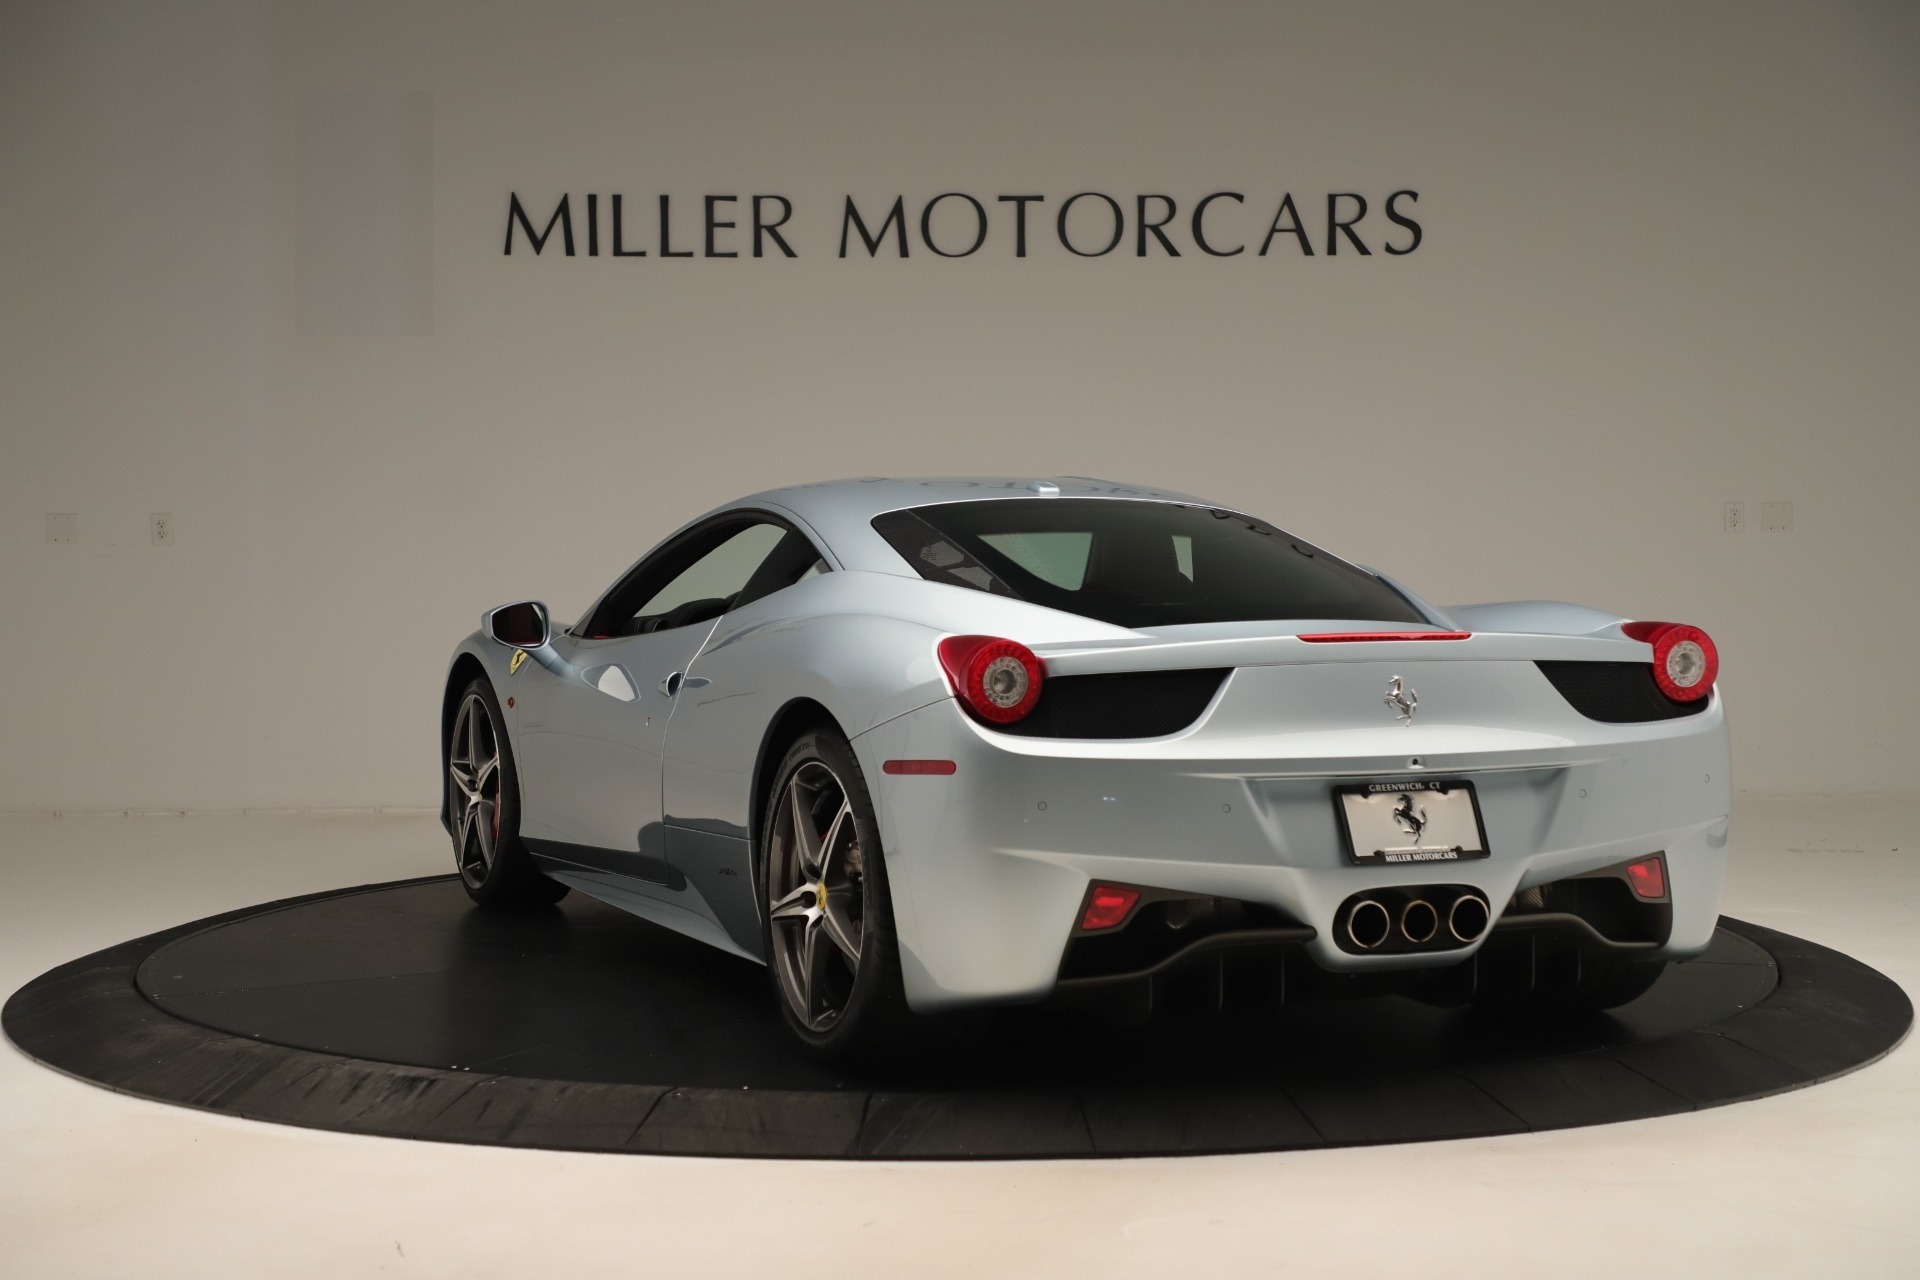 PreOwned 2015 Ferrari 458 Italia For Sale () Miller Motorcars Stock